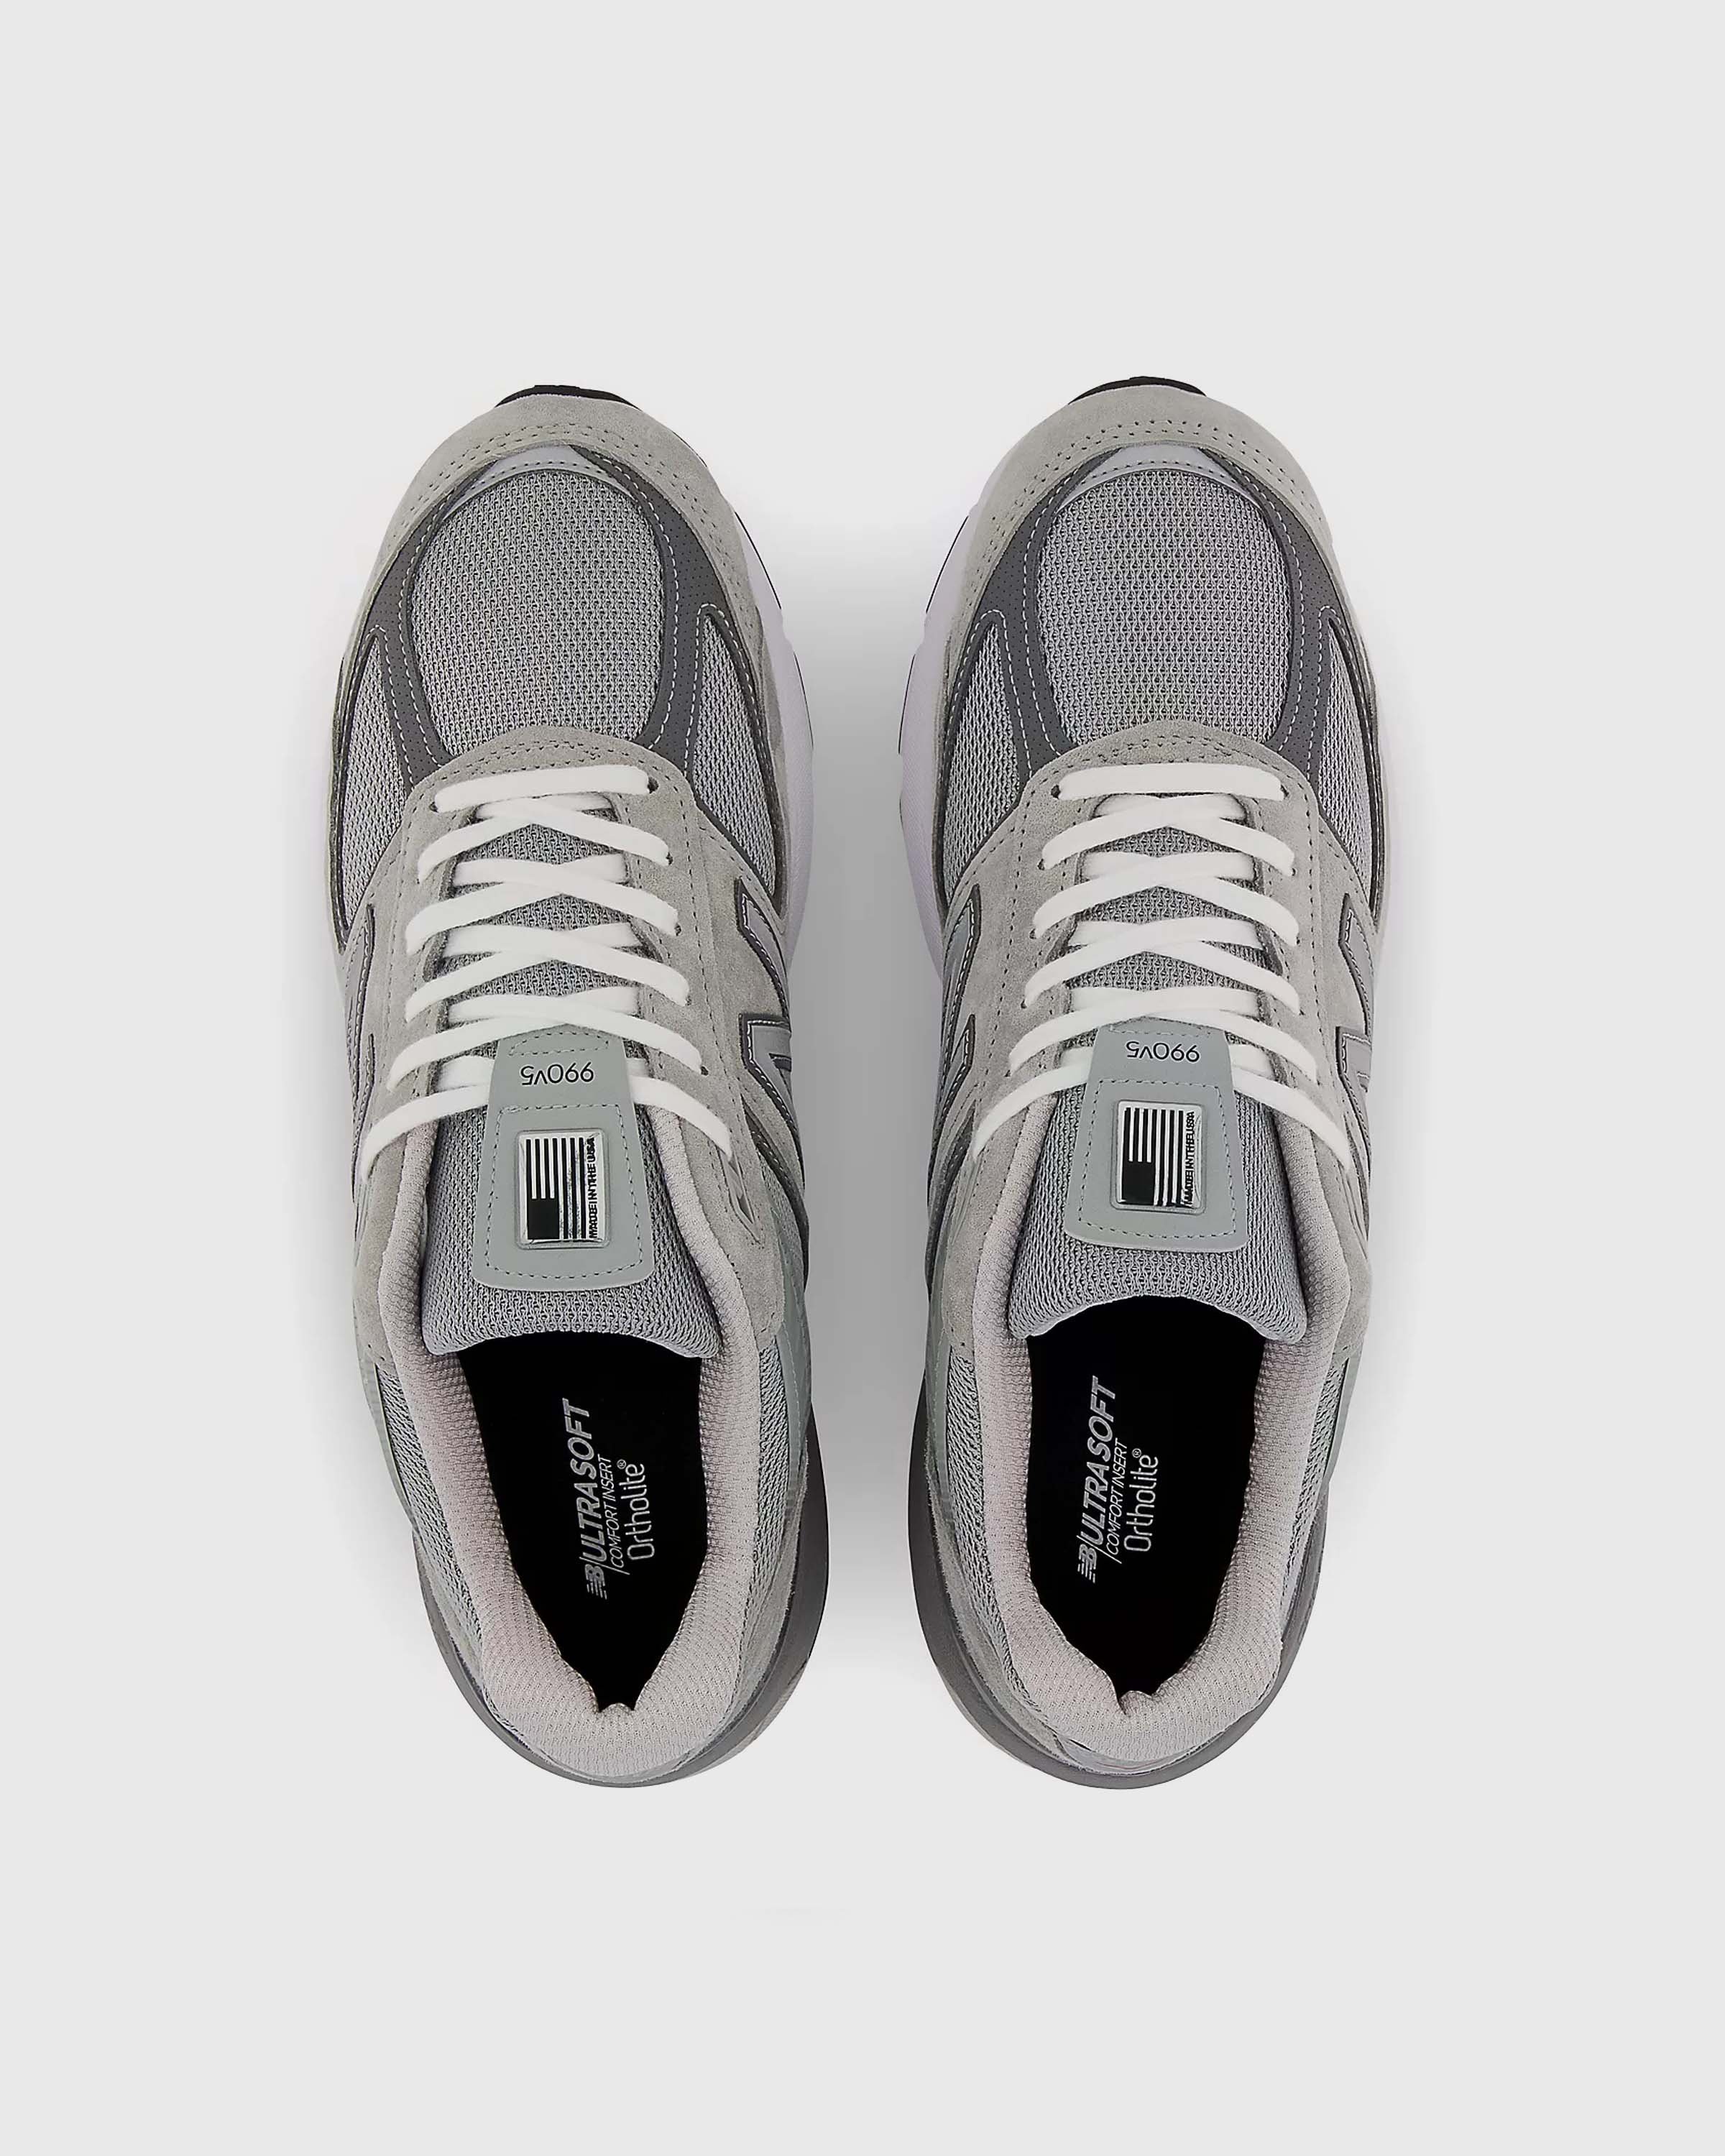 New Balance - M 990 GL5 Grey - Footwear - Grey - Image 5